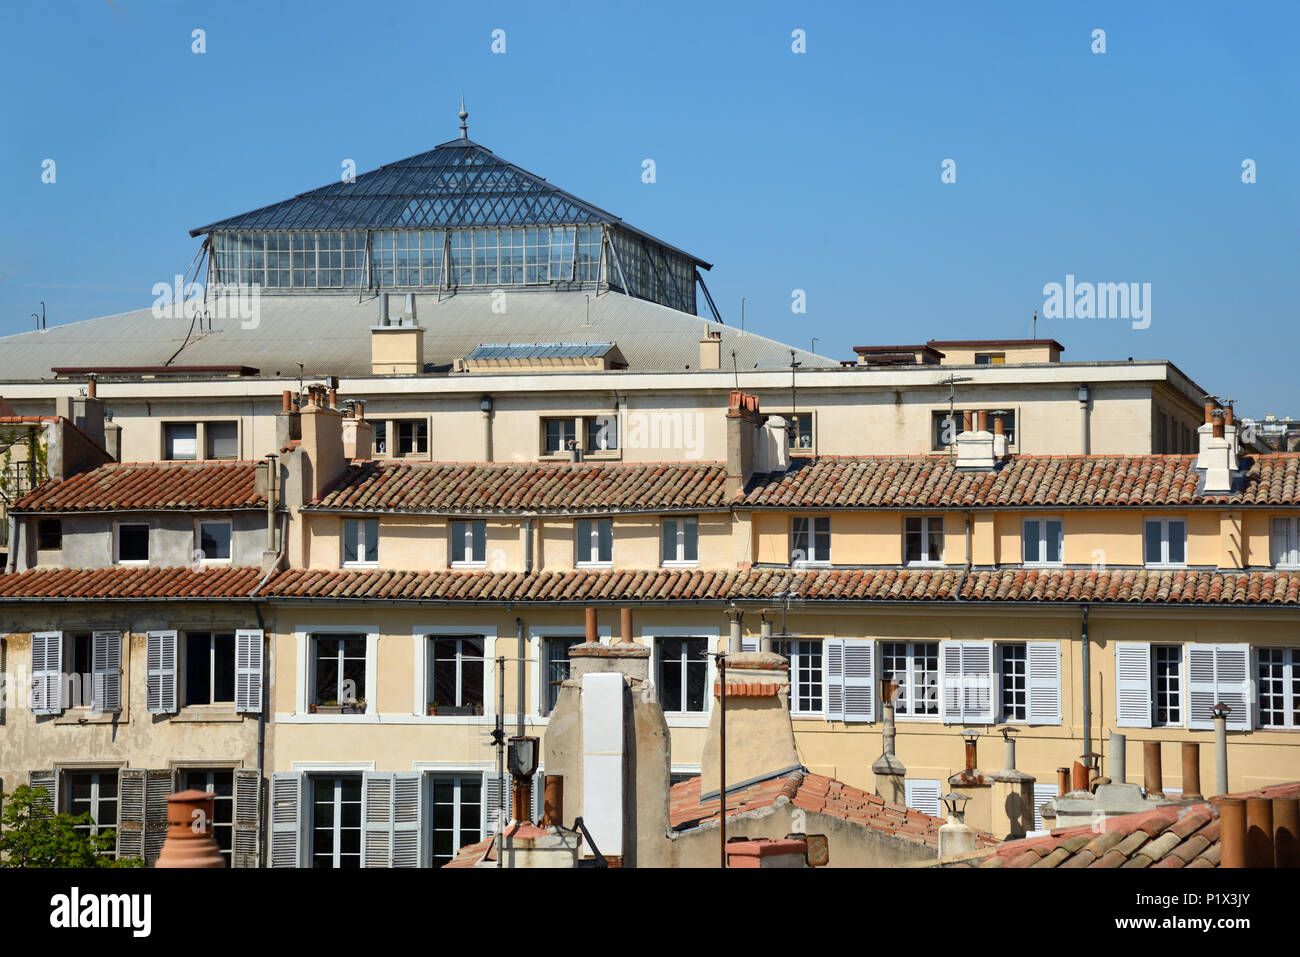 Lucernario di diritto Corte Edificio, tetti, Skyline ed edifici storici nel centro storico o il centro storico di Aix-en-Provence Provence Francia Foto Stock